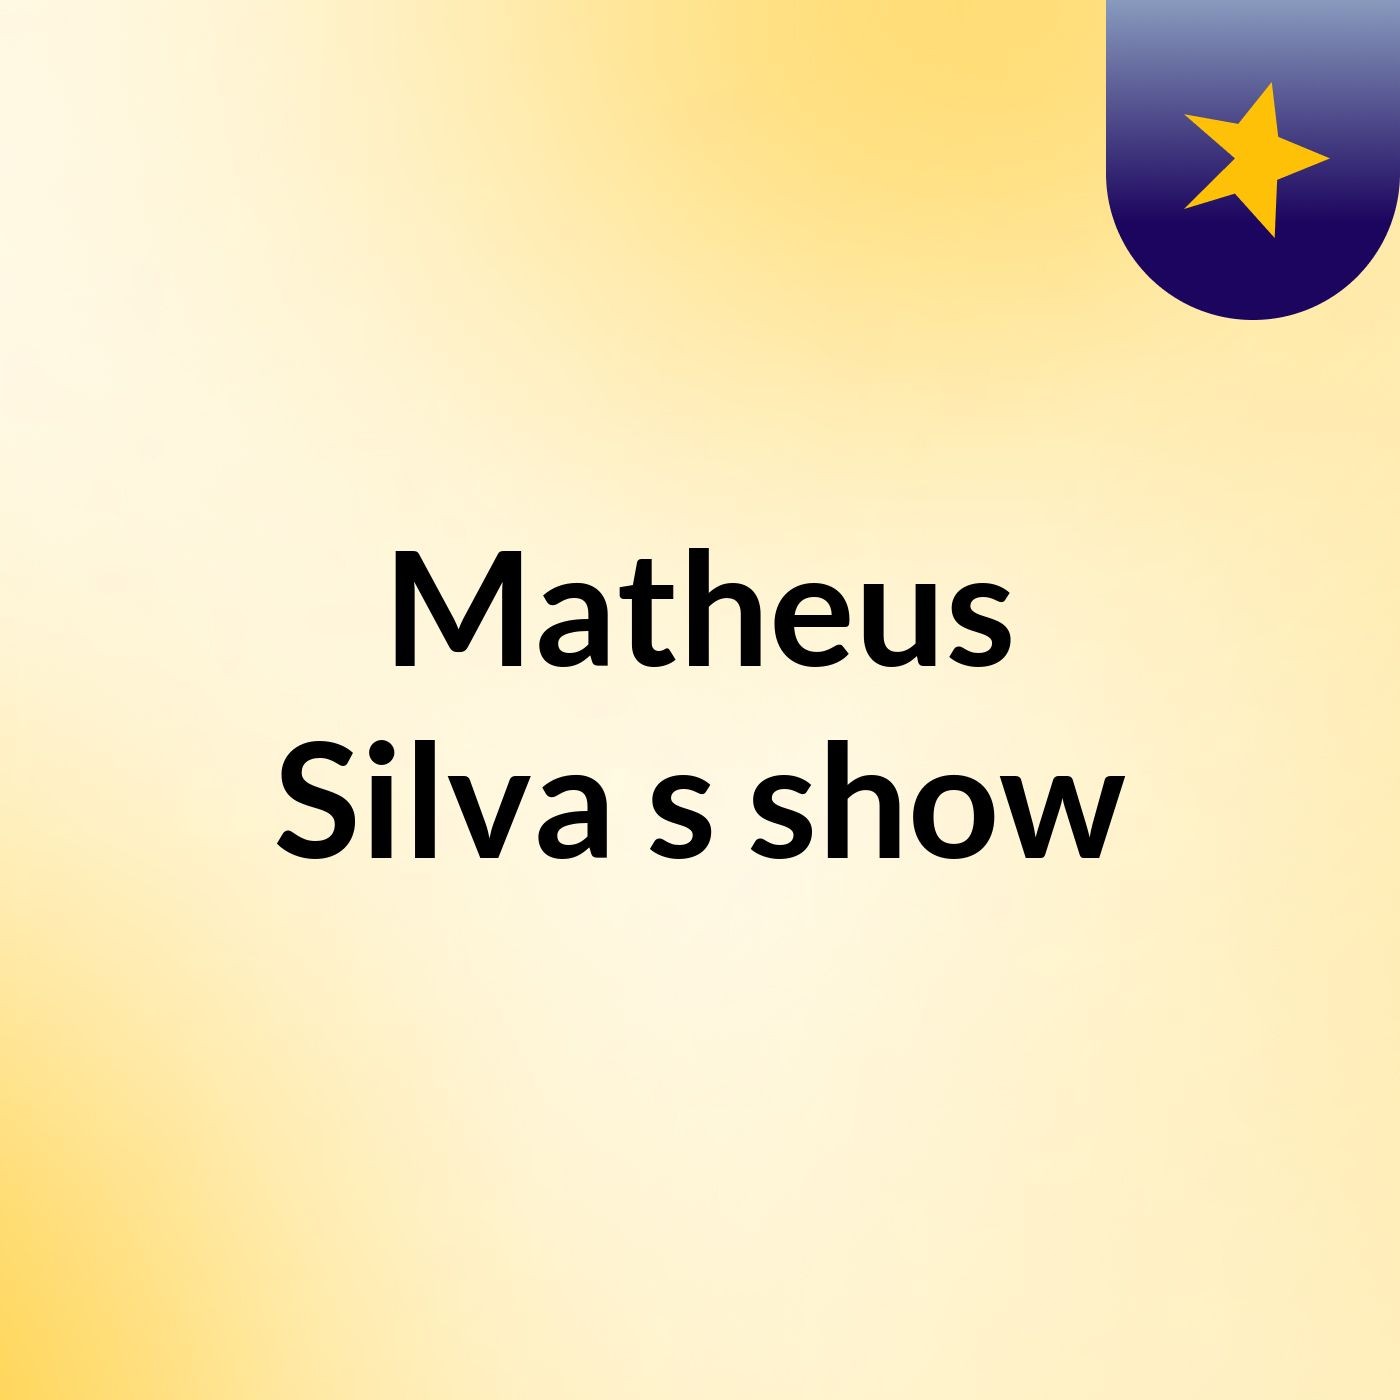 Matheus Silva's show